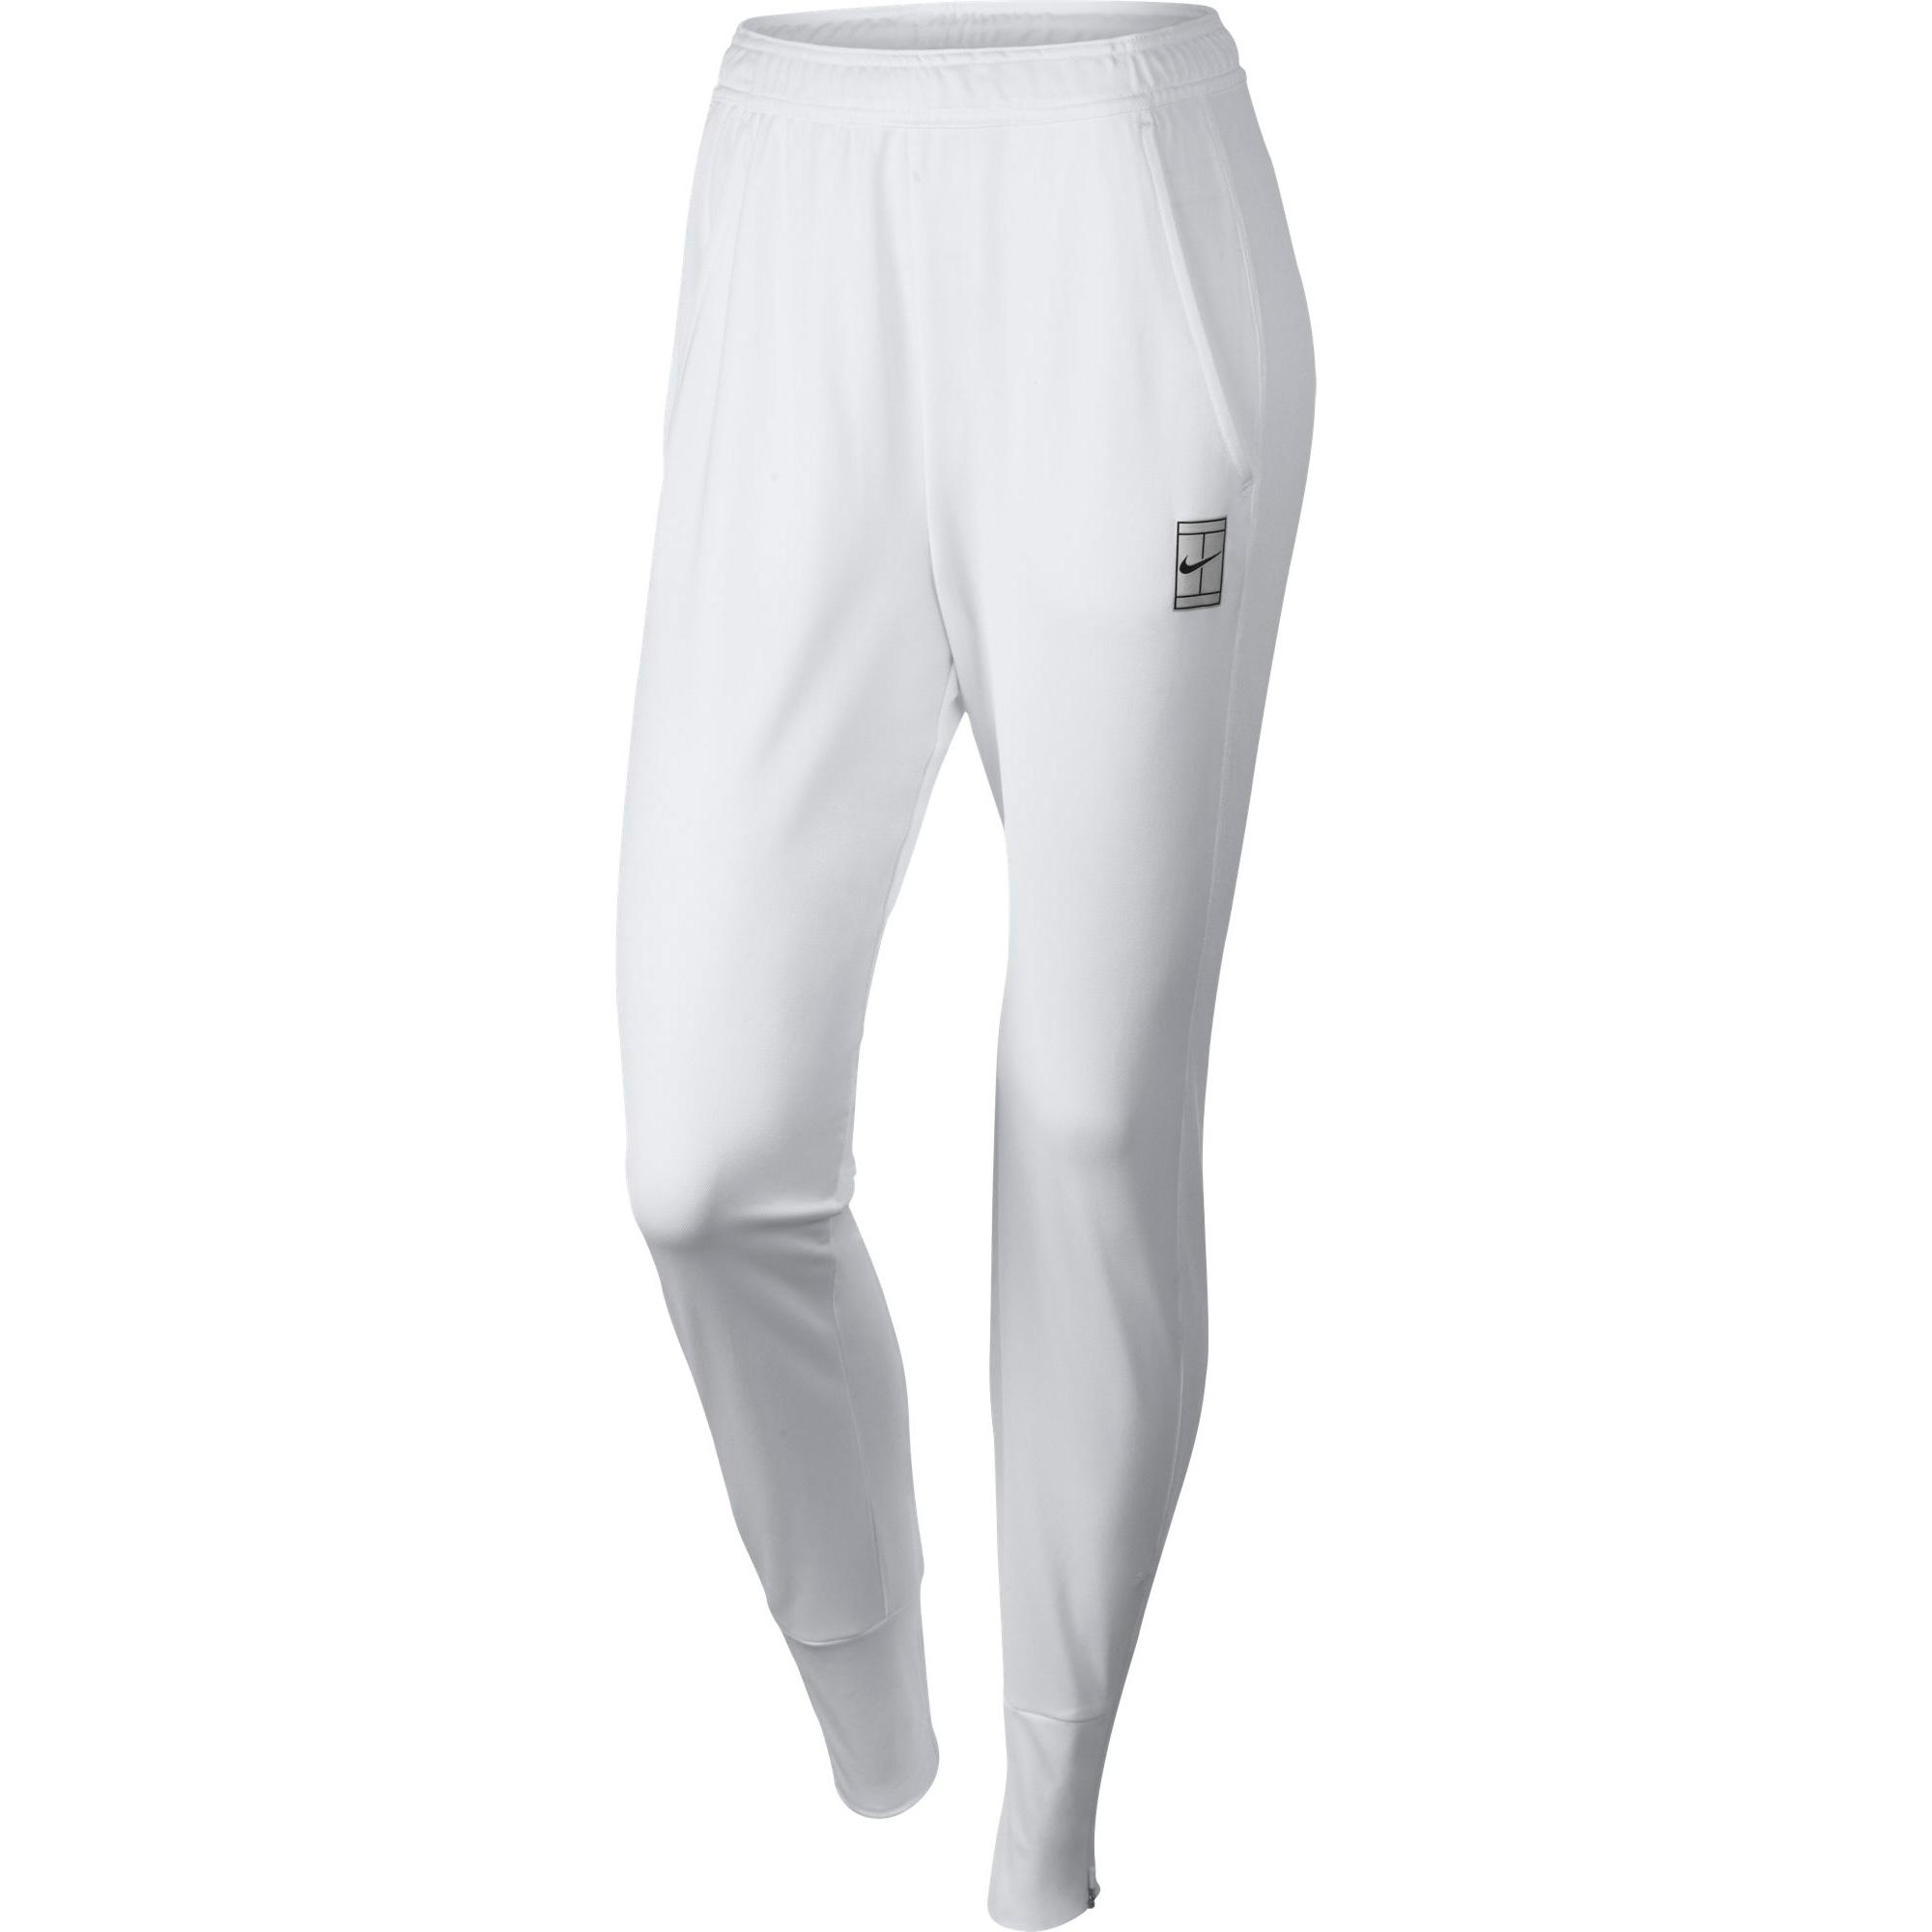 Nike Womens Dry Tennis Pants White Tennisnuts Com